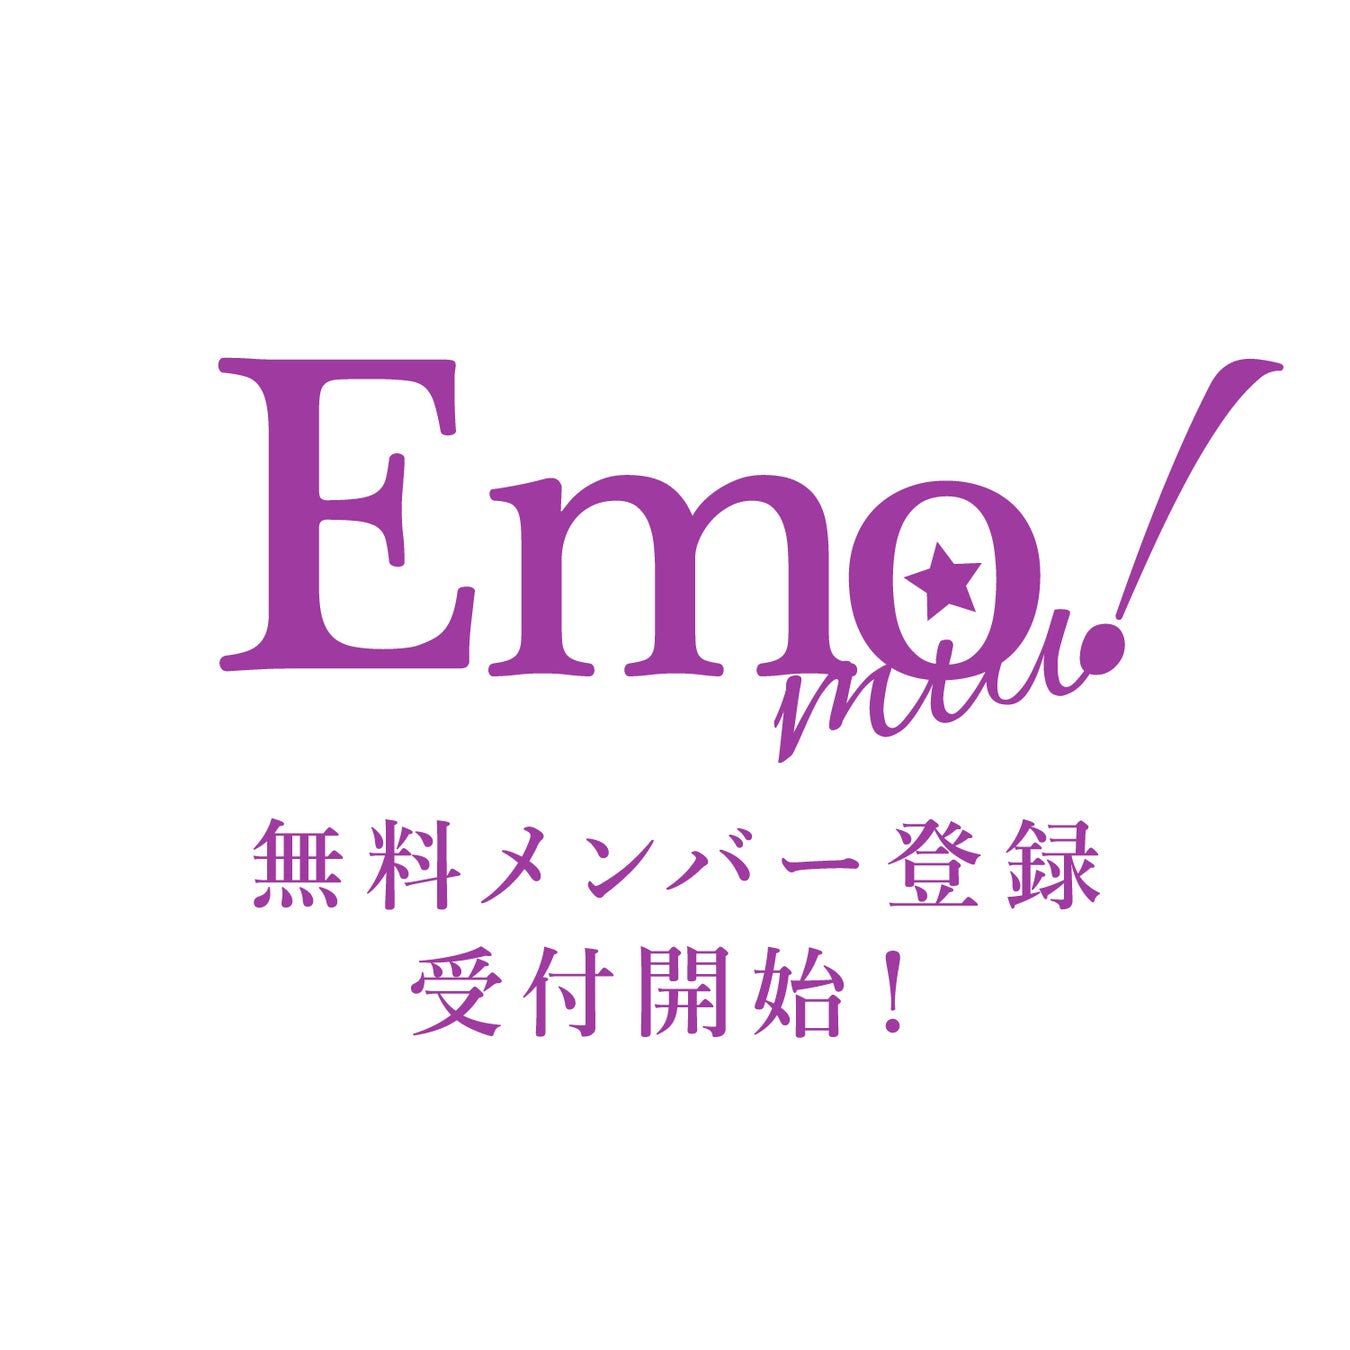 “エモい”ニュースを発信するWebマガジンEmo!miu(エモミュー)　無料メンバー会員、8月より本格募集スタート！